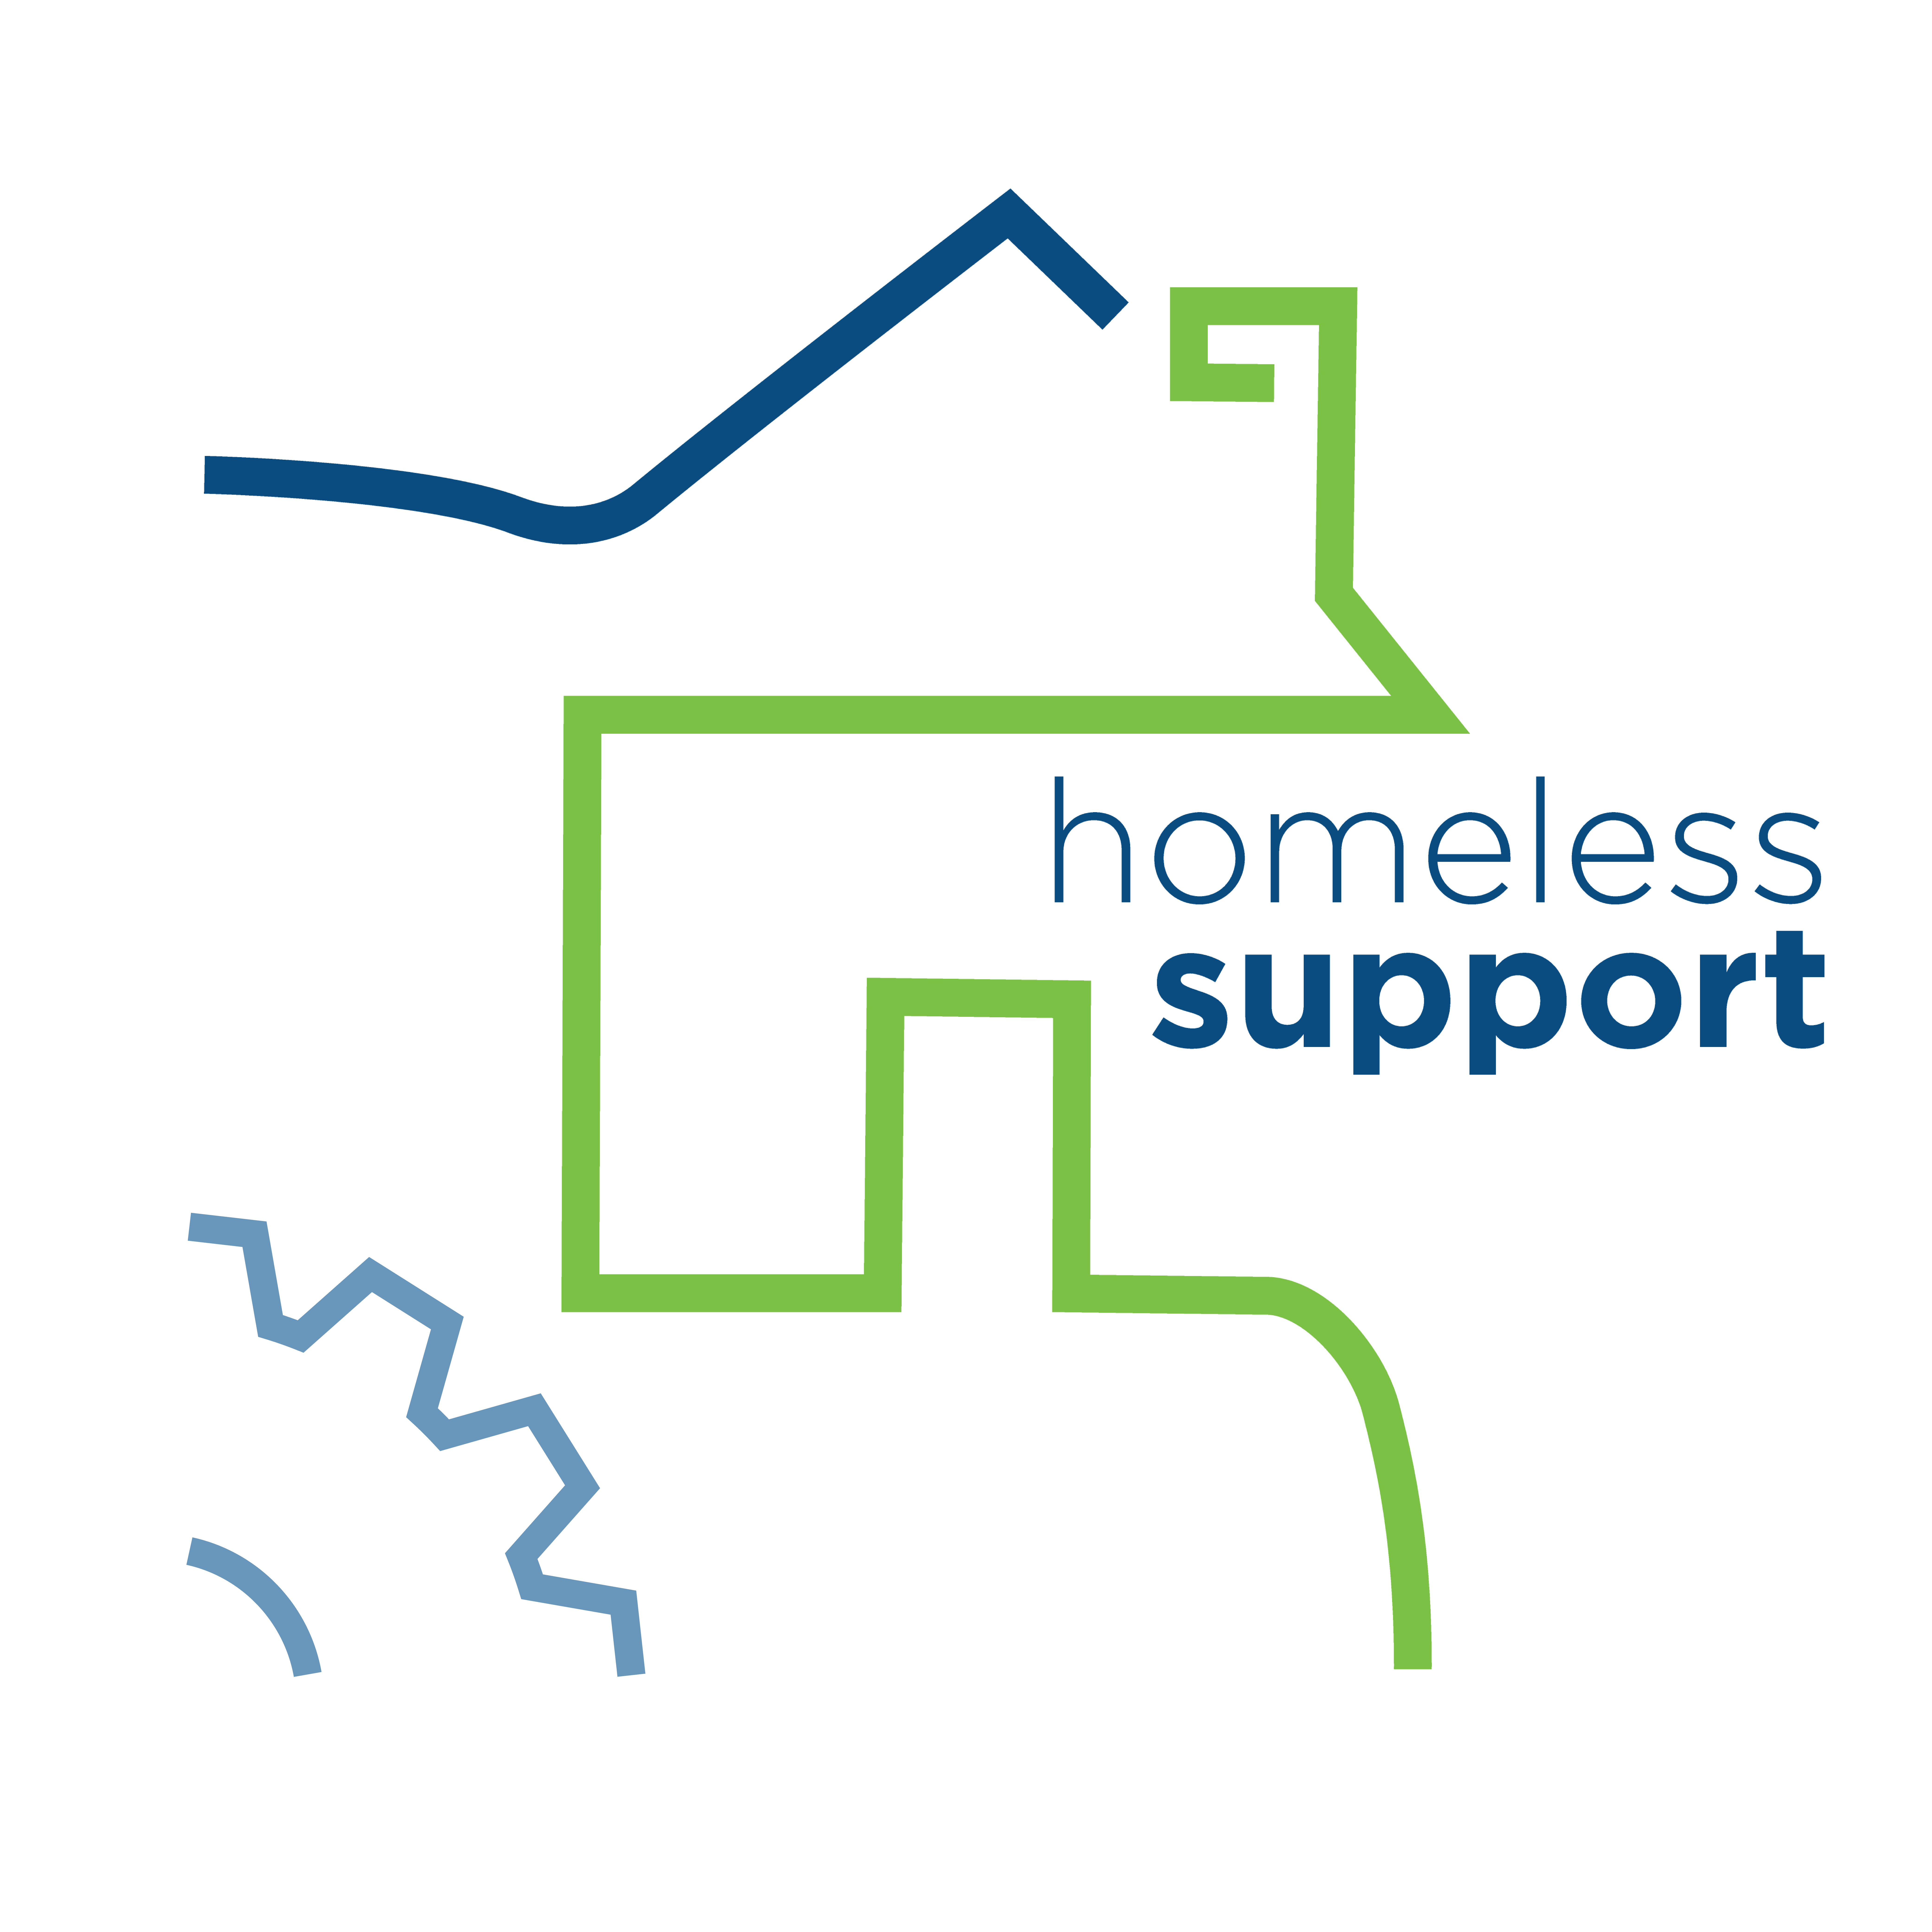 Homeless support logo